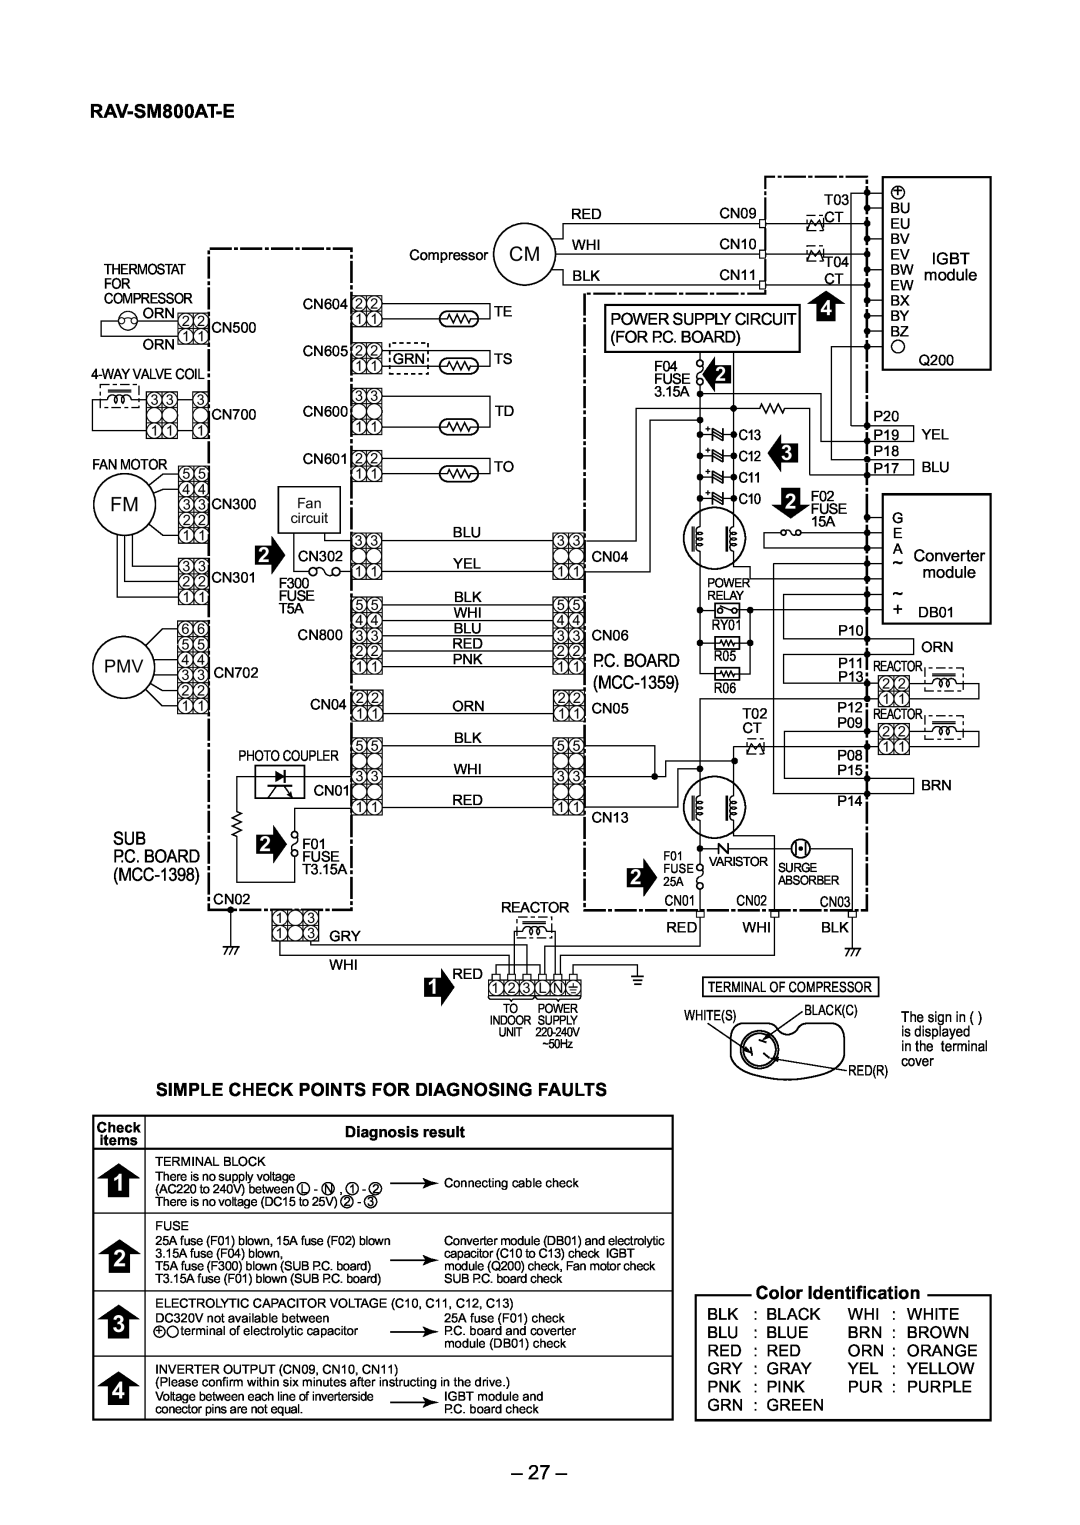 Toshiba RAV-SM560AT-E, RAV-SM800UT-E, RAV-SM560UT-E, RAV-SM560BT-E, RAV-SM800BT-E 27, RAV-SM800AT-E, P.C. Board, MCC-1359 